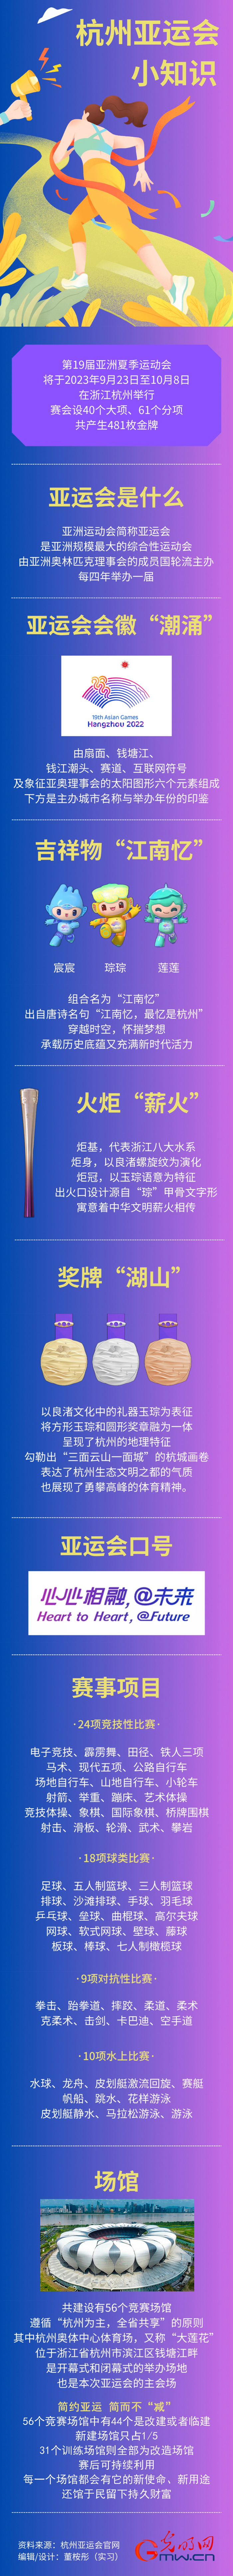 【亚运图景】一图读懂杭州亚运会 知识问答学起来